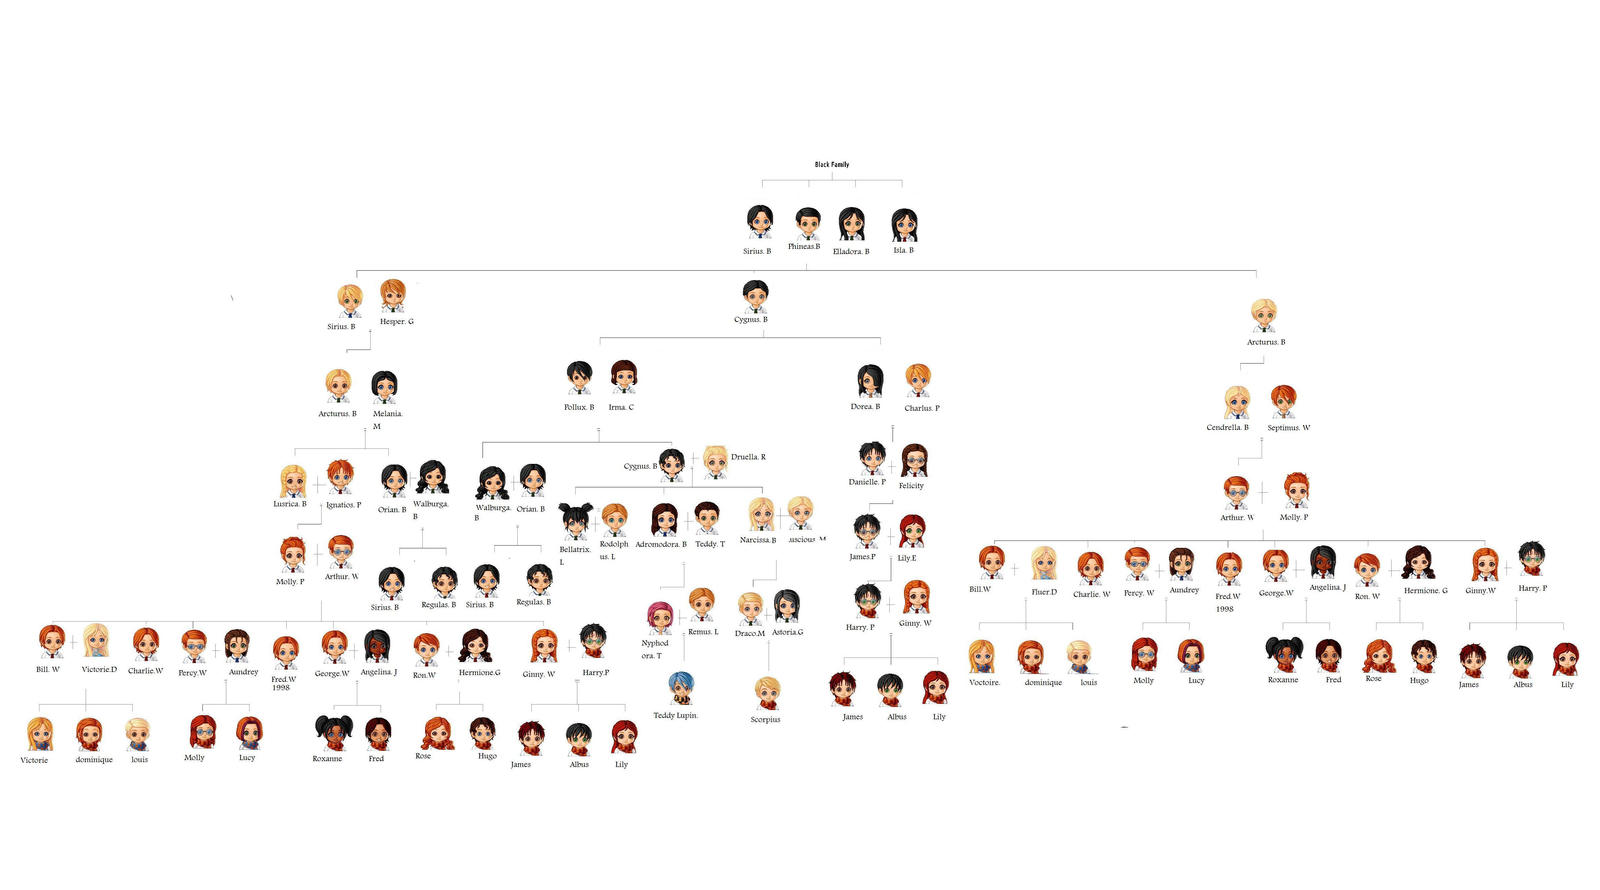 Harry Potter full family tree by Fangirl901 on DeviantArt